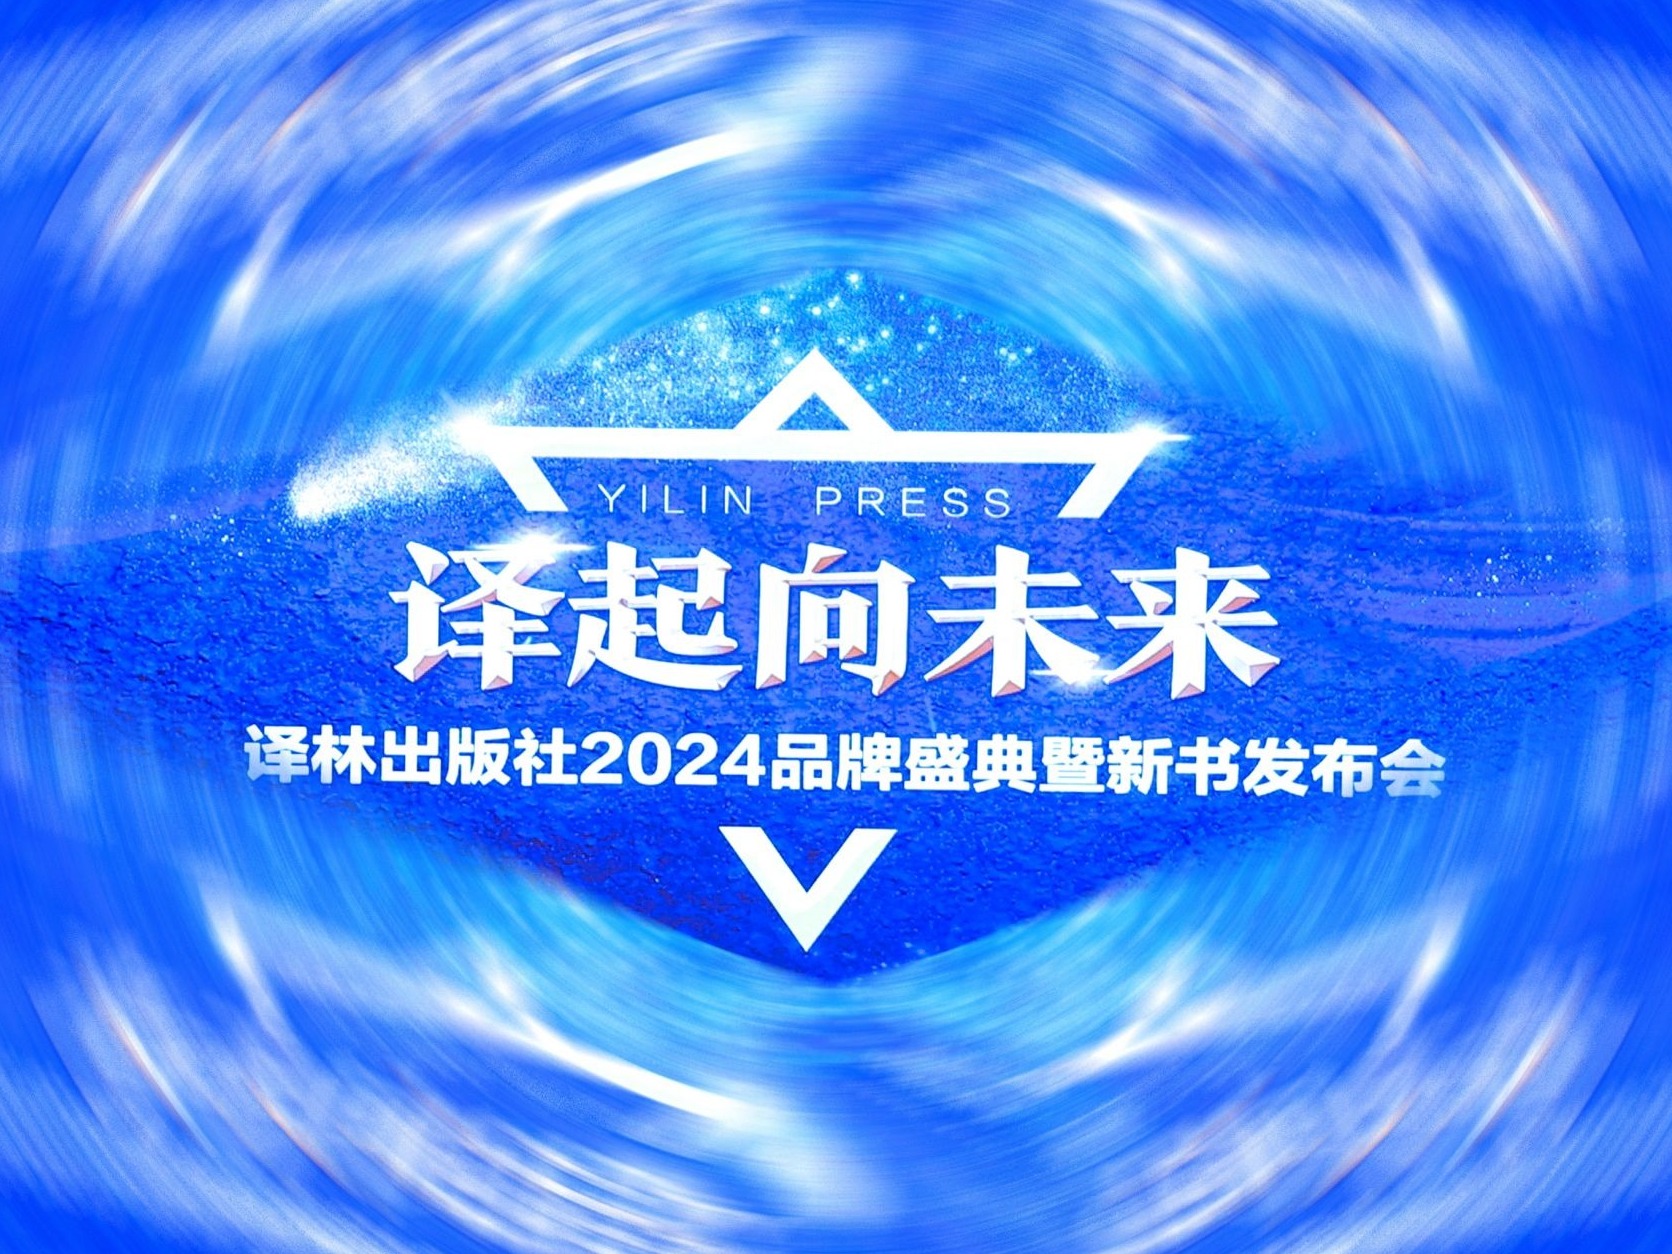 译林社举办2024品牌盛典暨新书发布会，刘亮程获2023年度作者奖